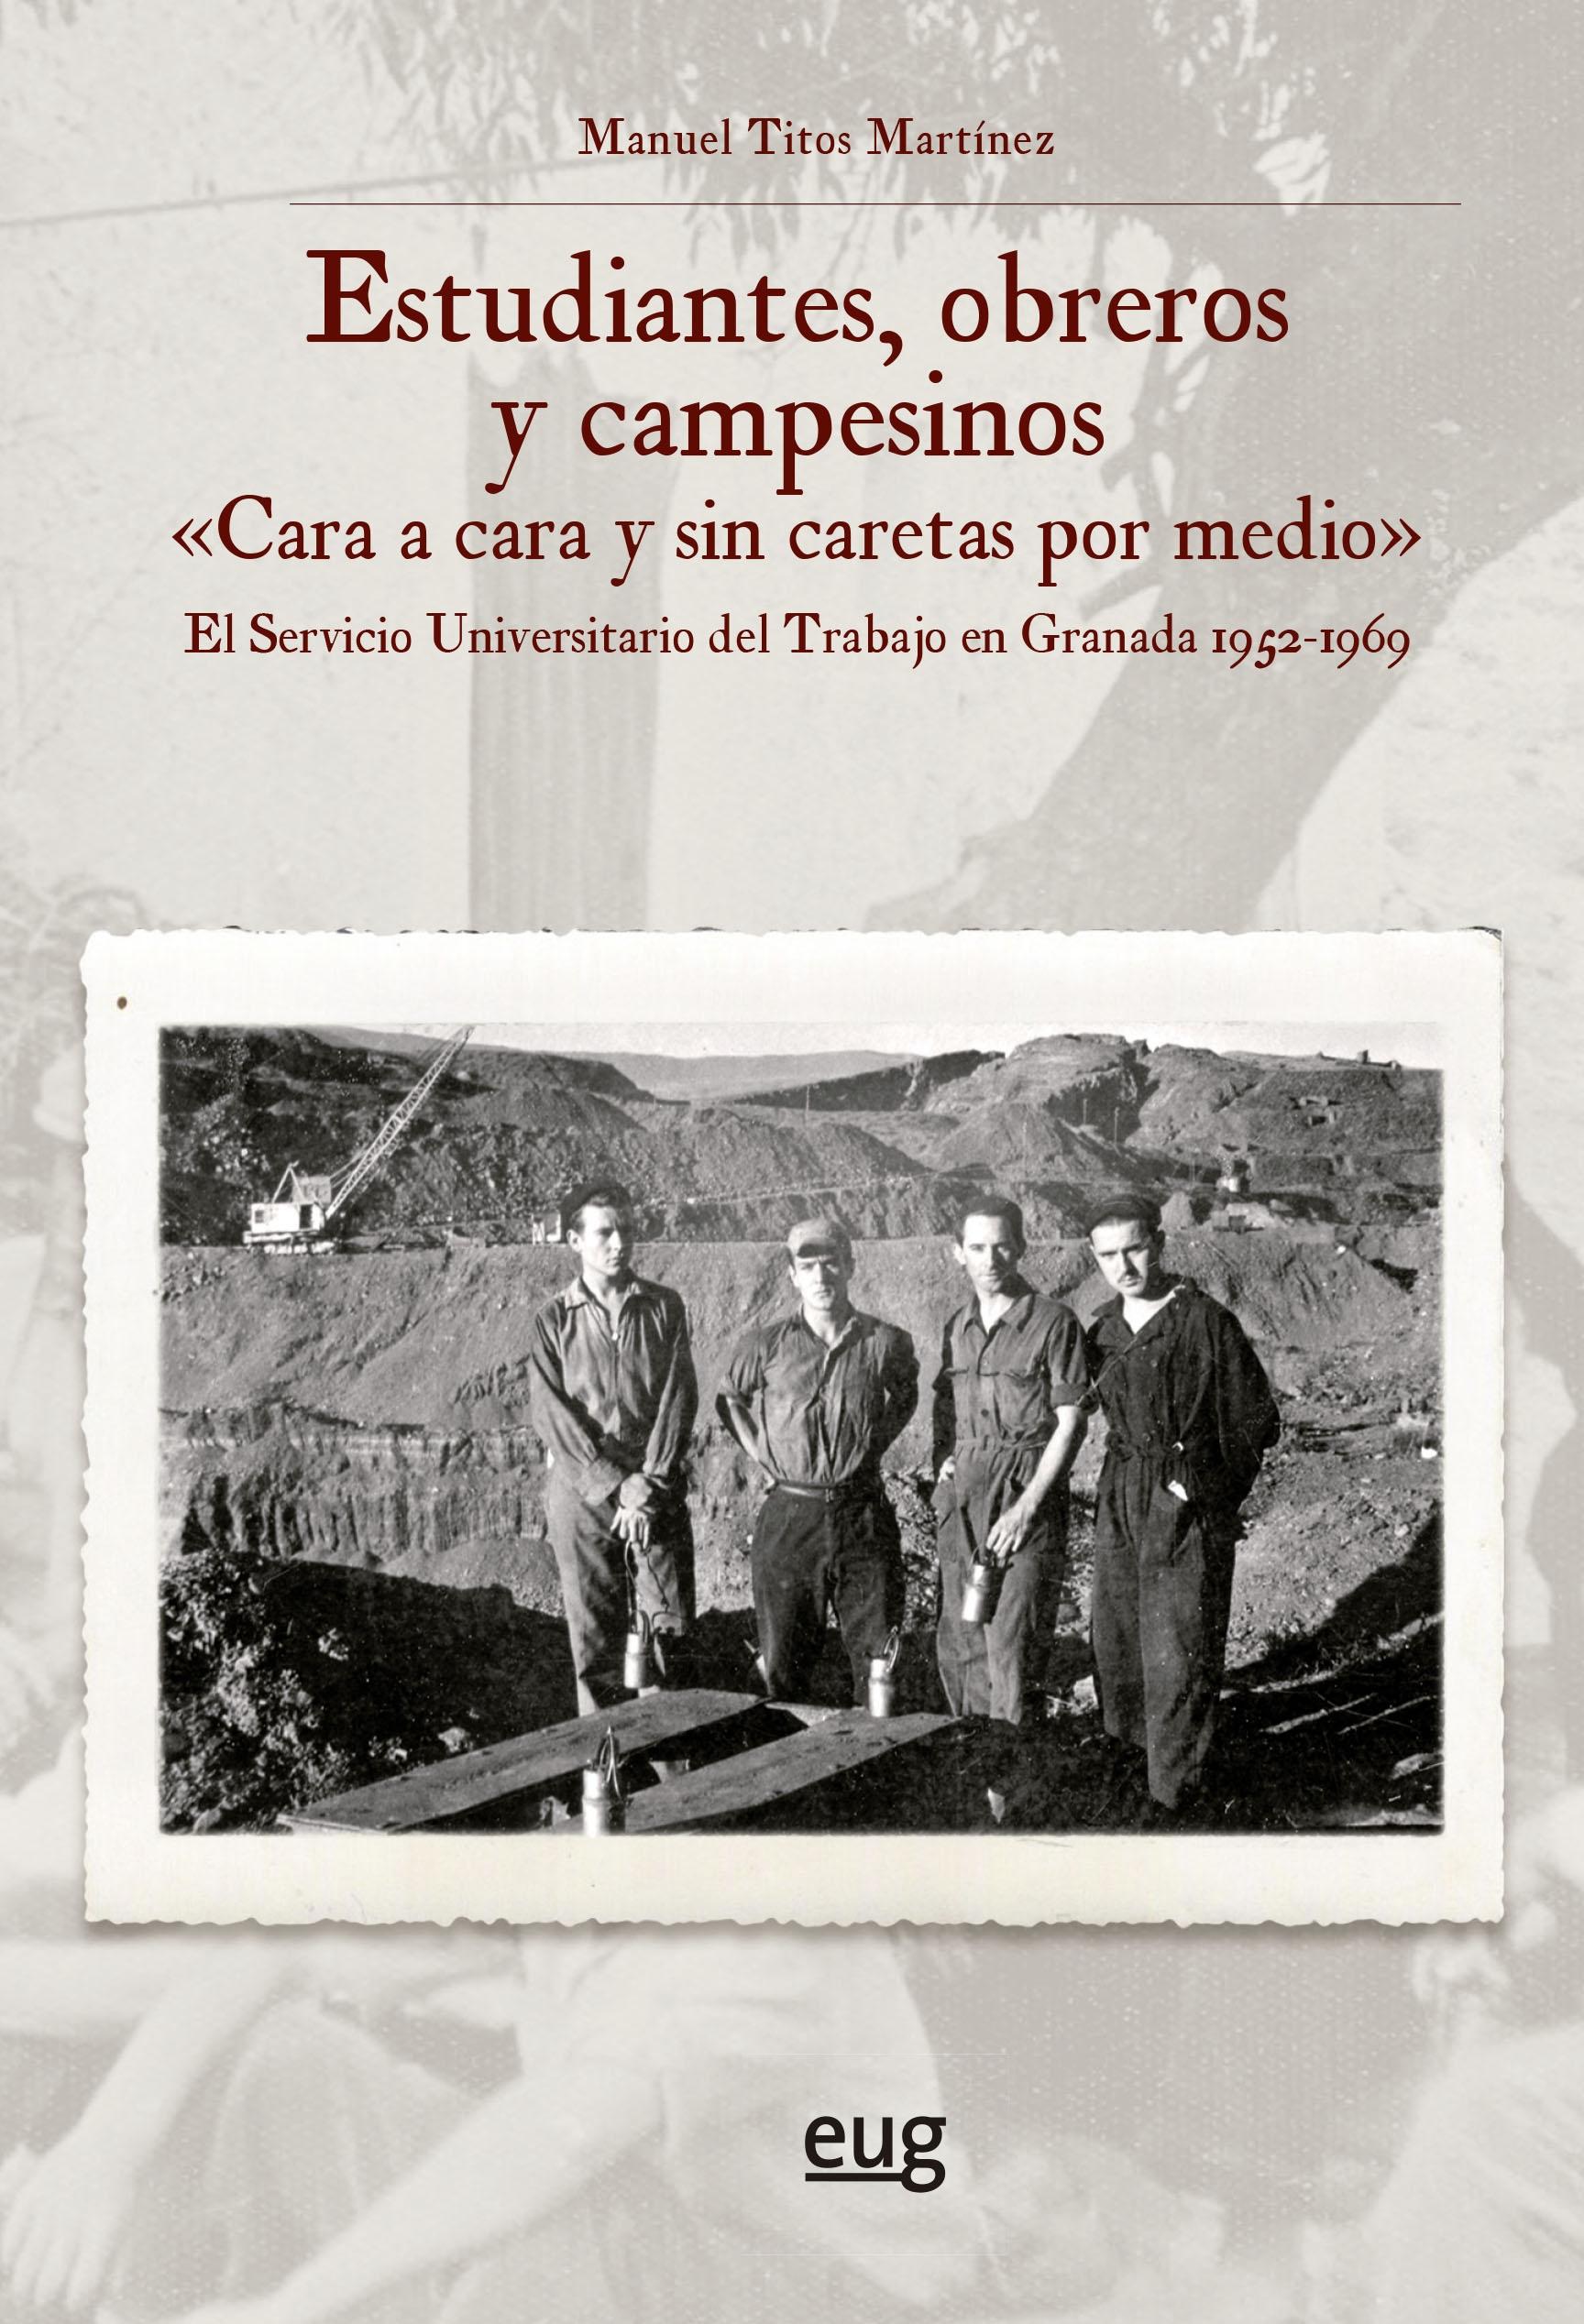 Estudiantes, obreros y campesinos "Cara a cara y sin caretas por medio" "El servicio universitario del trabajo en Granada 1952-1969"